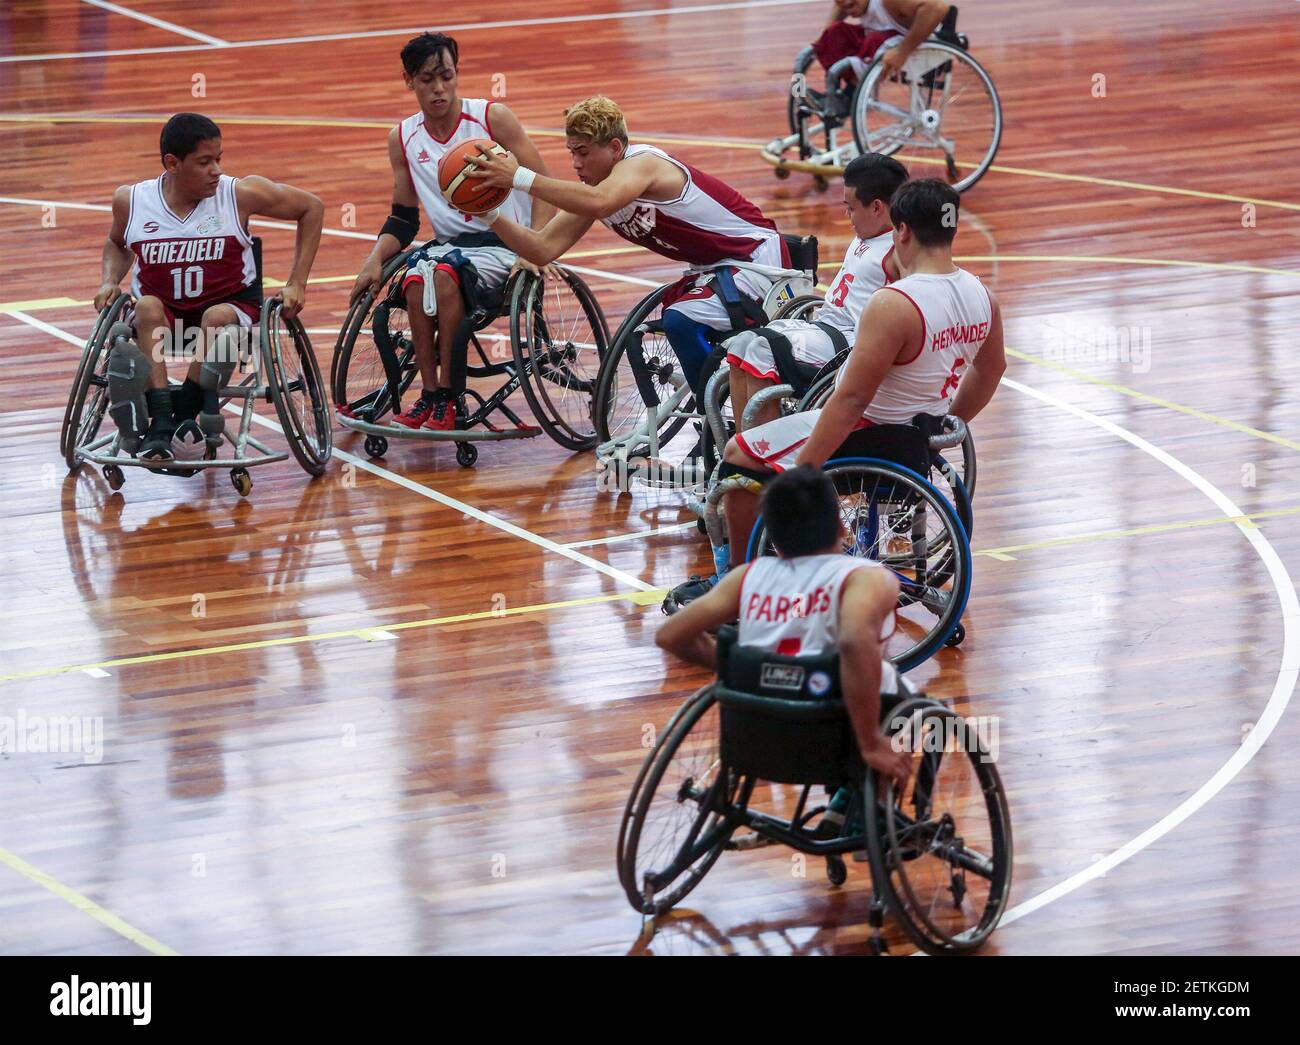 170323) -- SAO PAULO, 23 de marzo de 2017 (Xinhua) -- los atletas  participan en el partido de Baloncesto silla de ruedas entre Chile y  Venezuela durante los Juegos Parapán Americano Juvenil